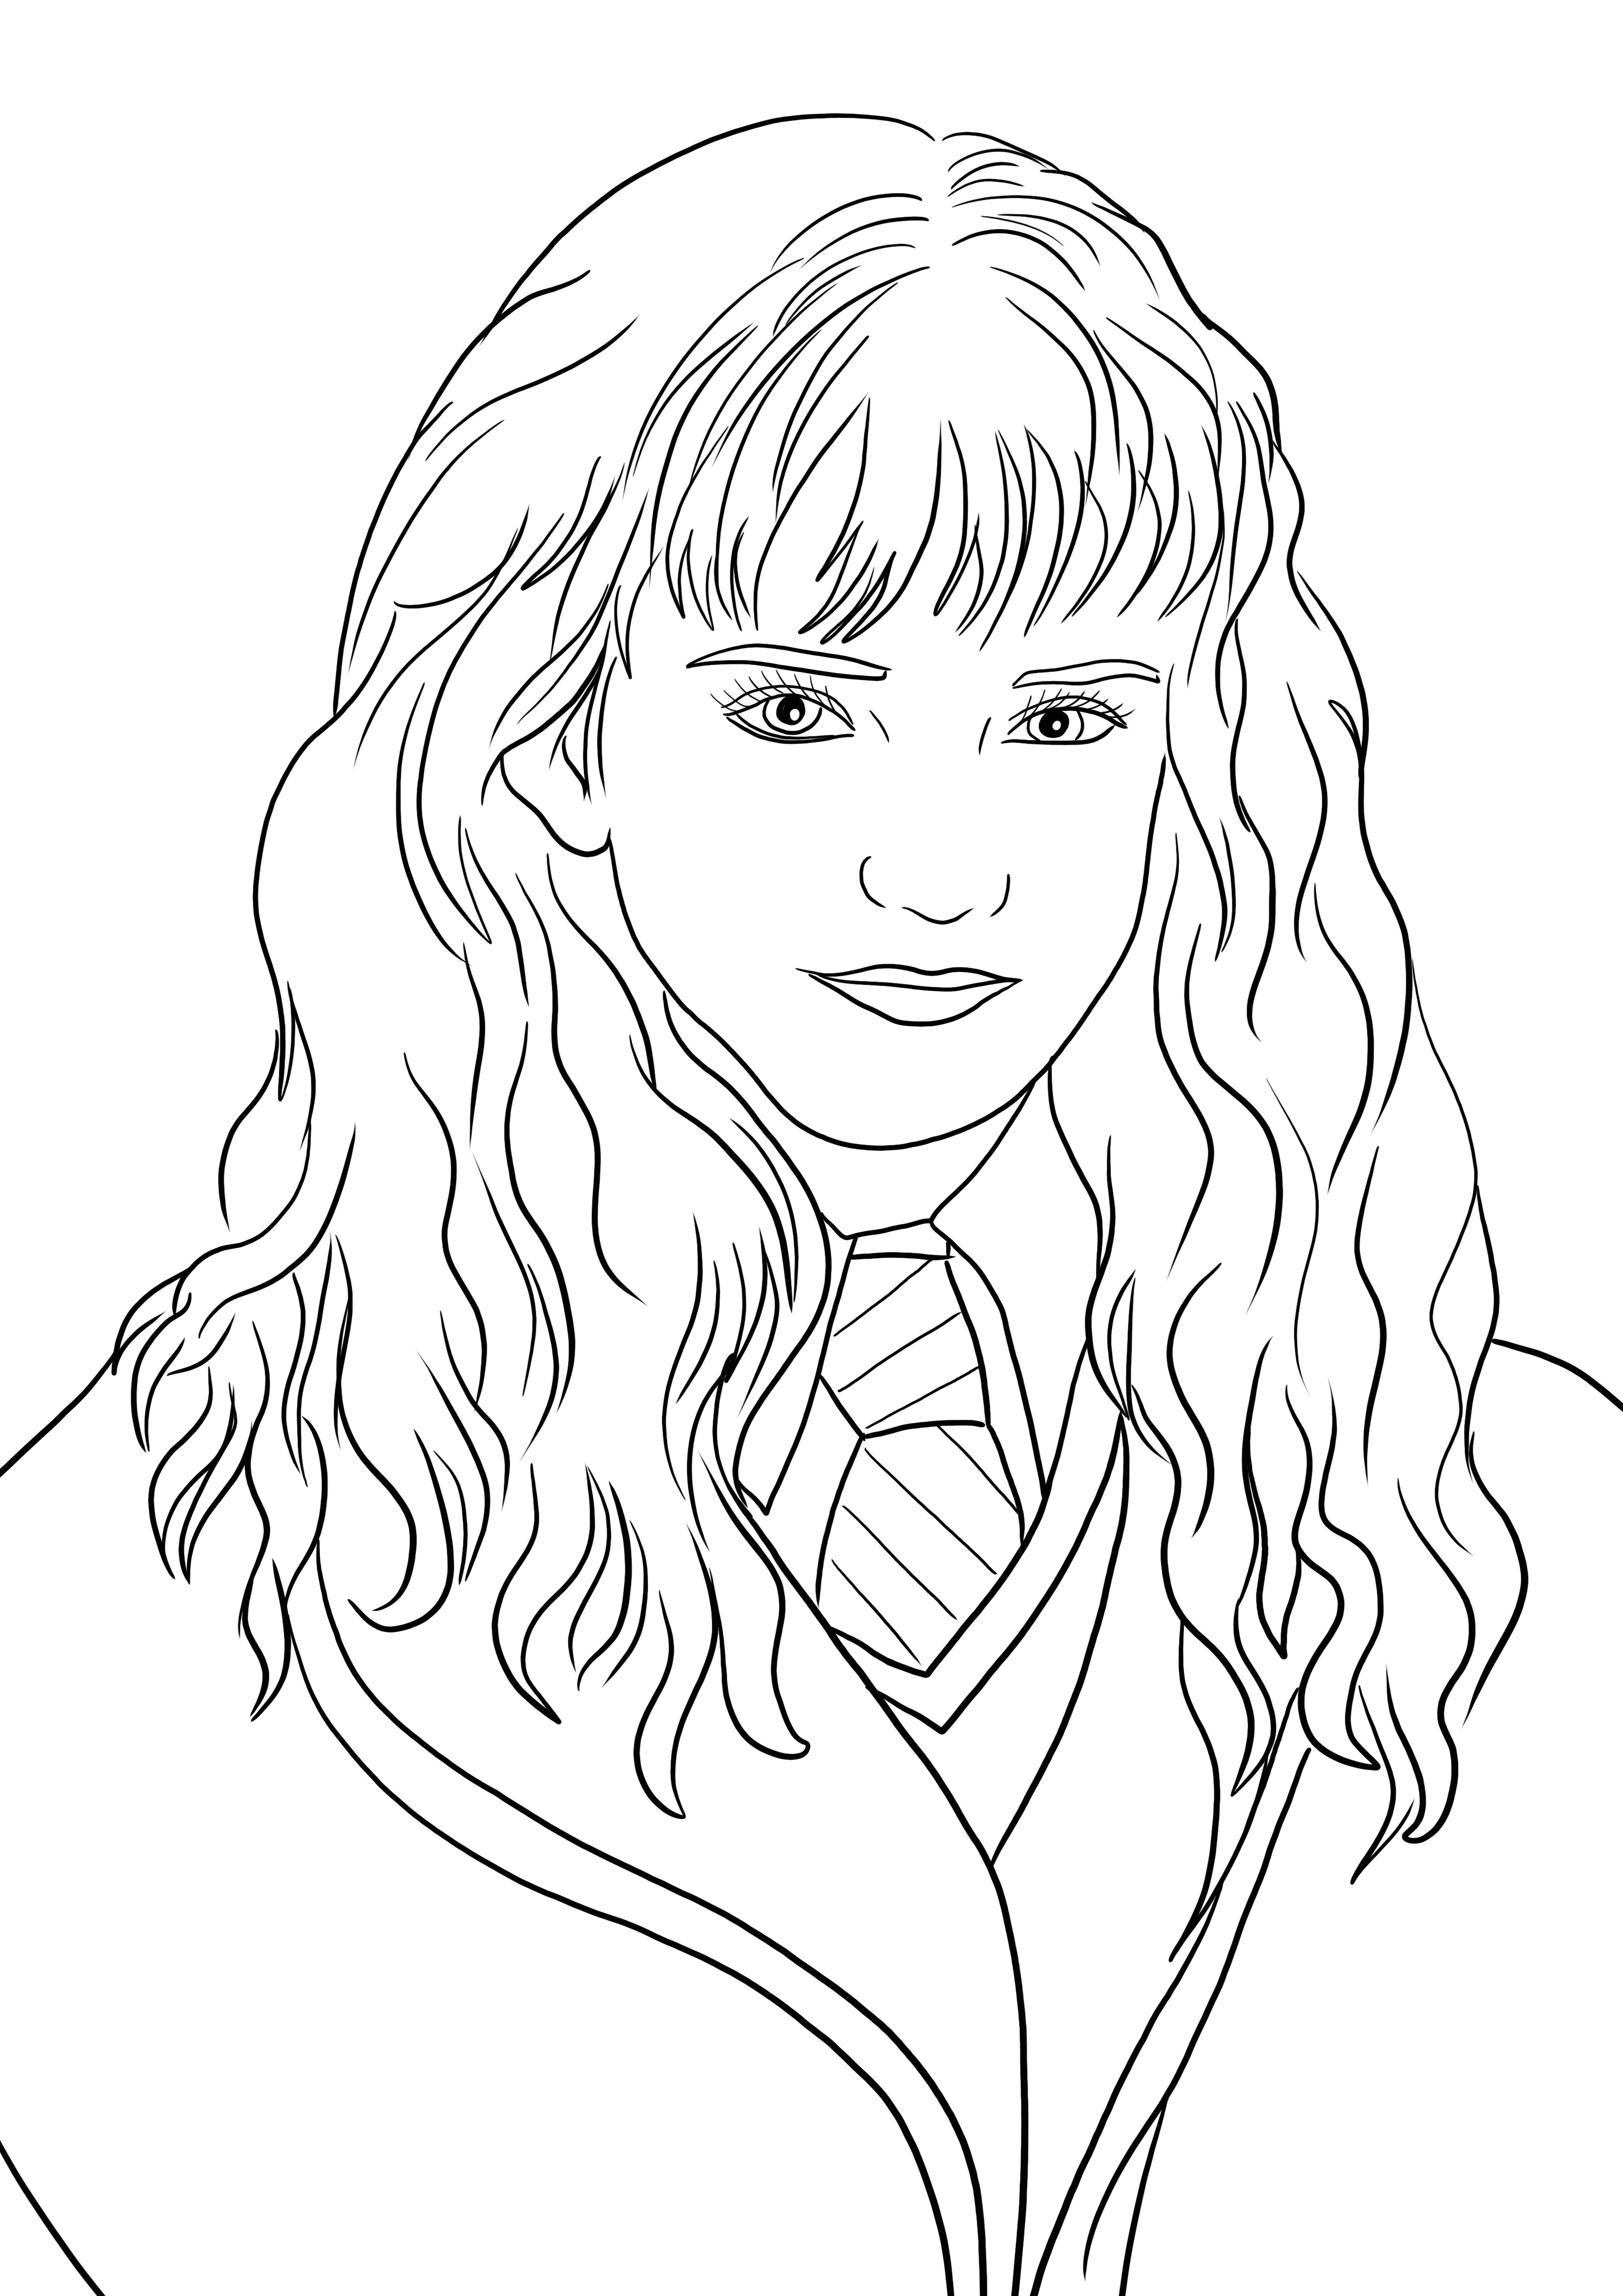 O imprimível gratuito de Hermione Granger pronto para colorir e se divertir